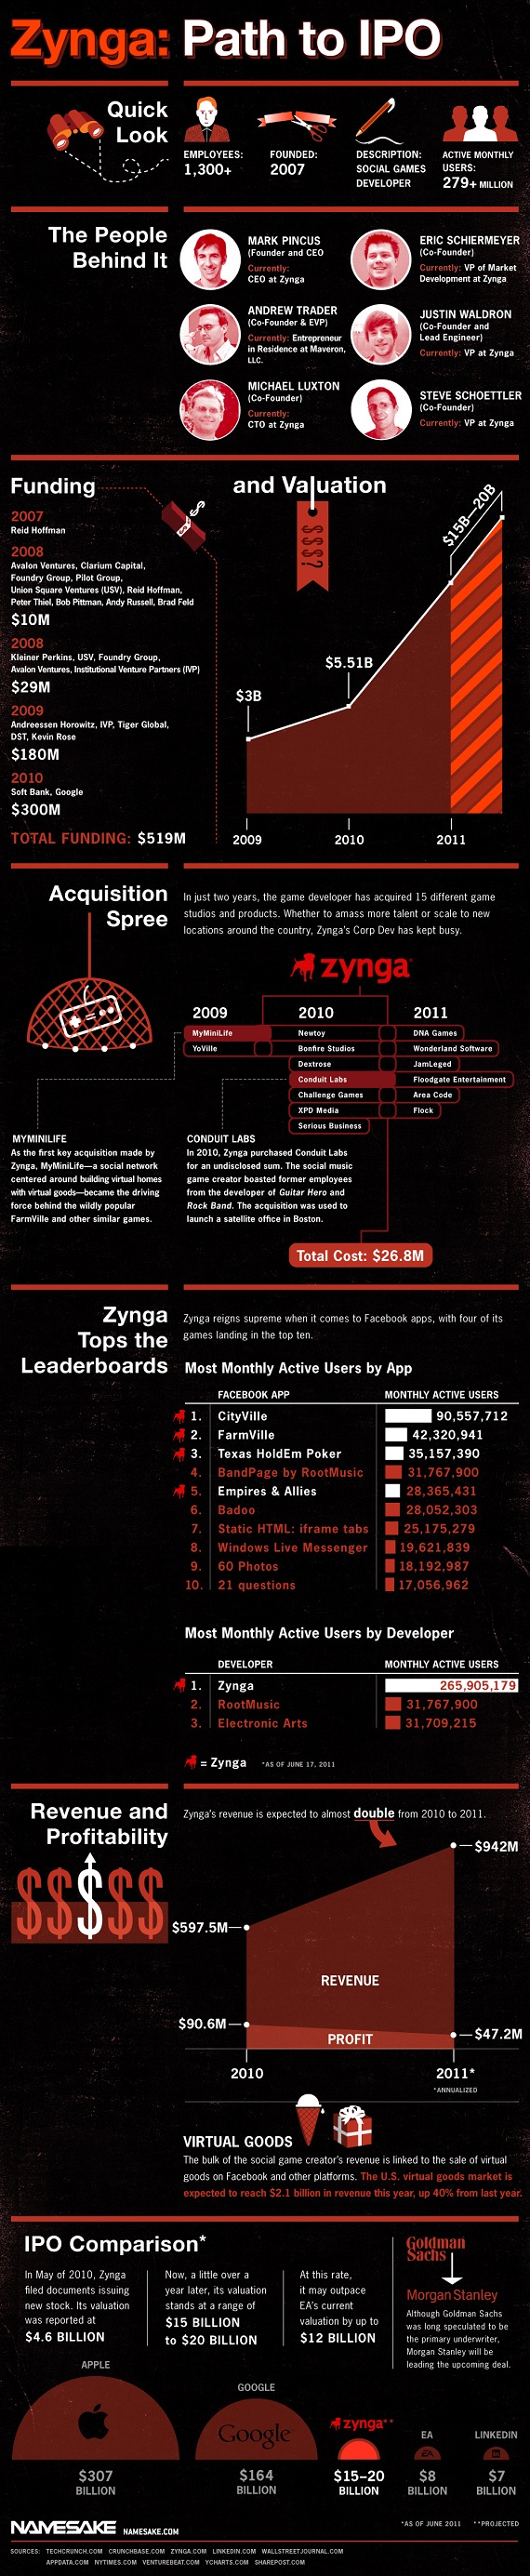 Zynga може залучити на IPO до $1 млрд (інфографіка)